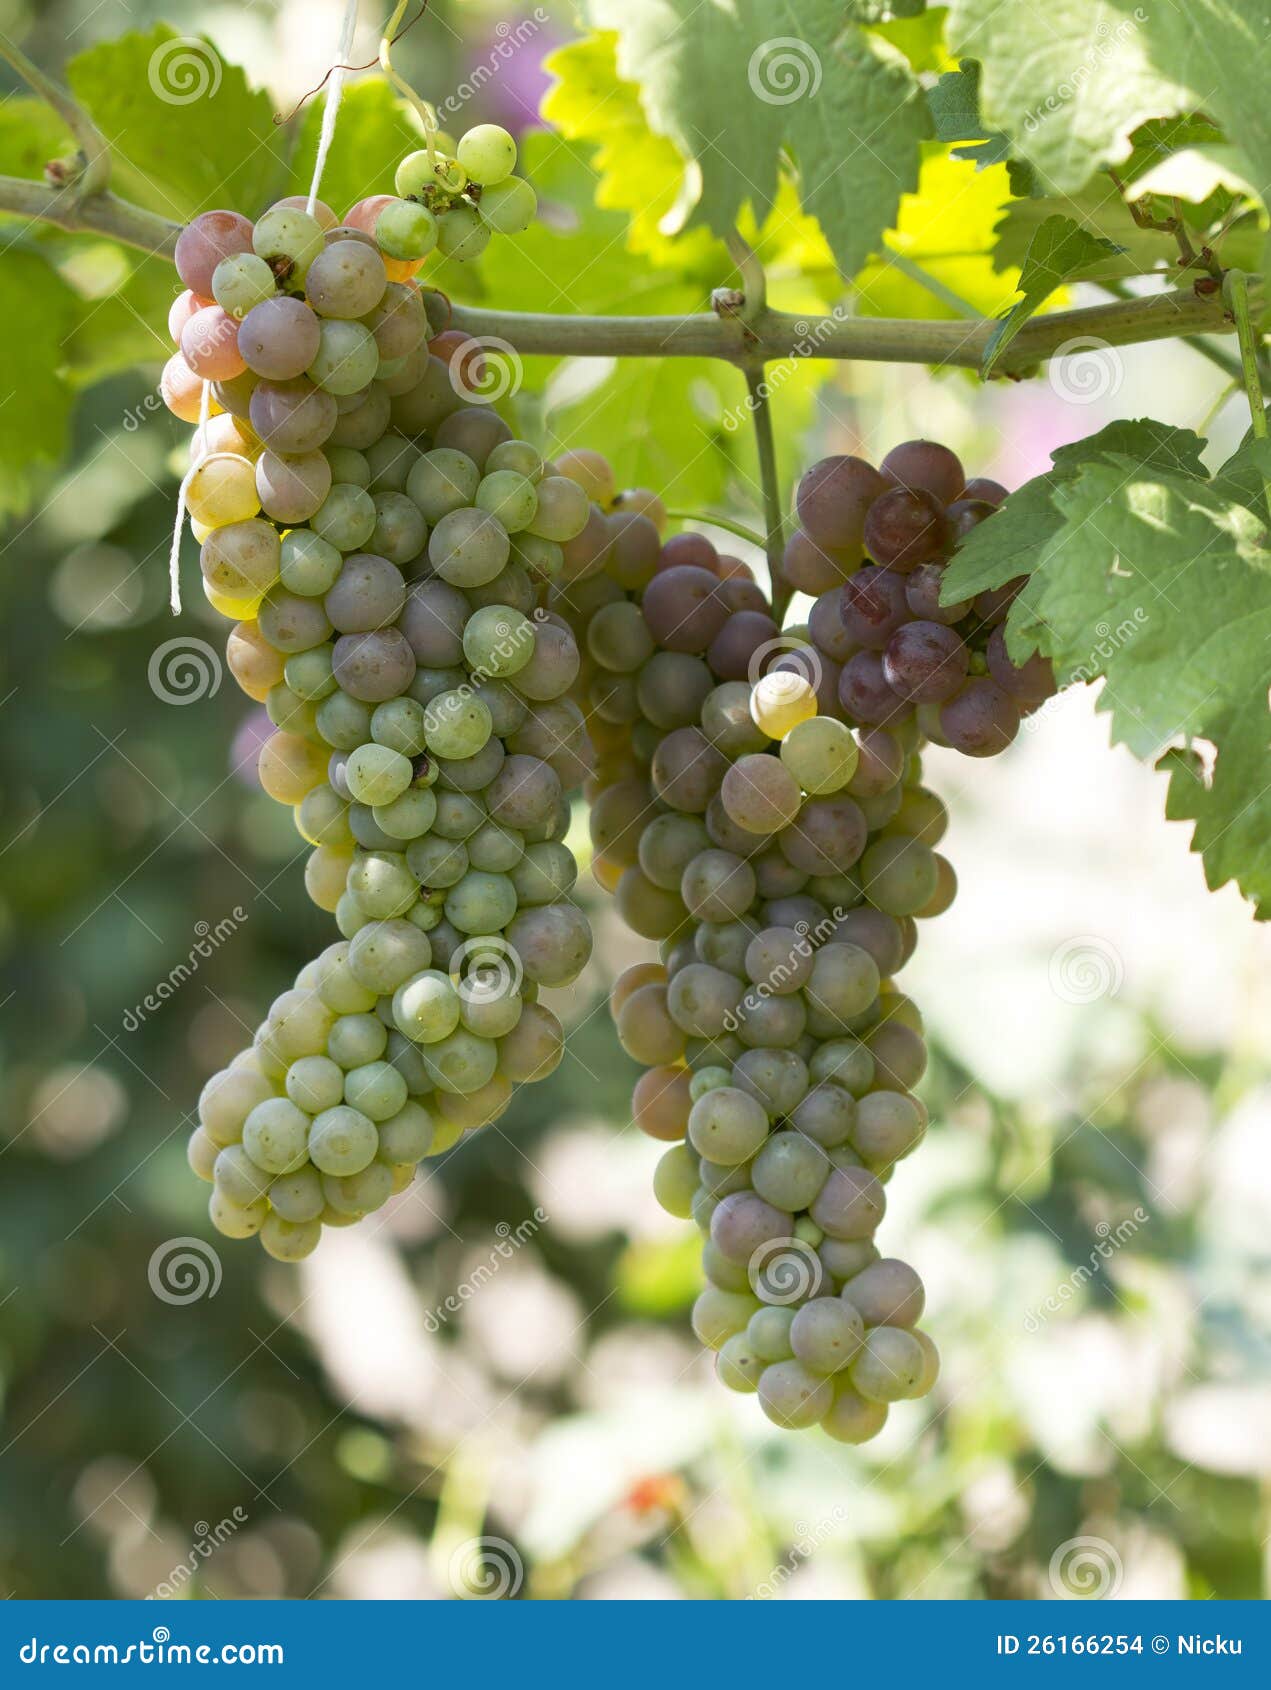 green grapes ripen detail